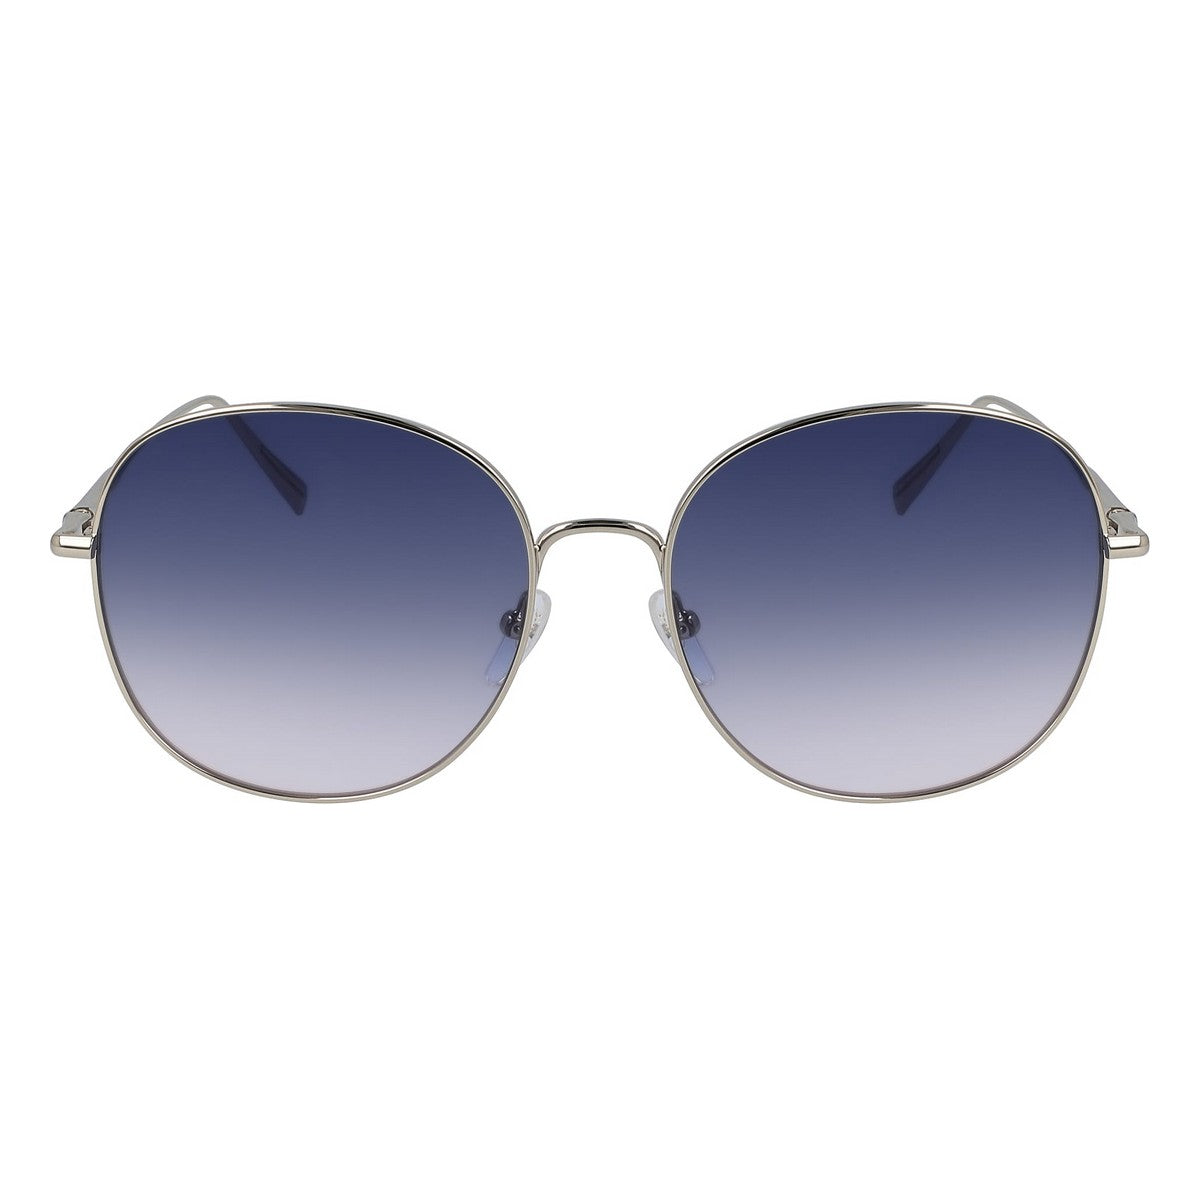 Kaufe Damensonnenbrille Longchamp LO118S-729 ø 59 mm bei AWK Flagship um € 71.00